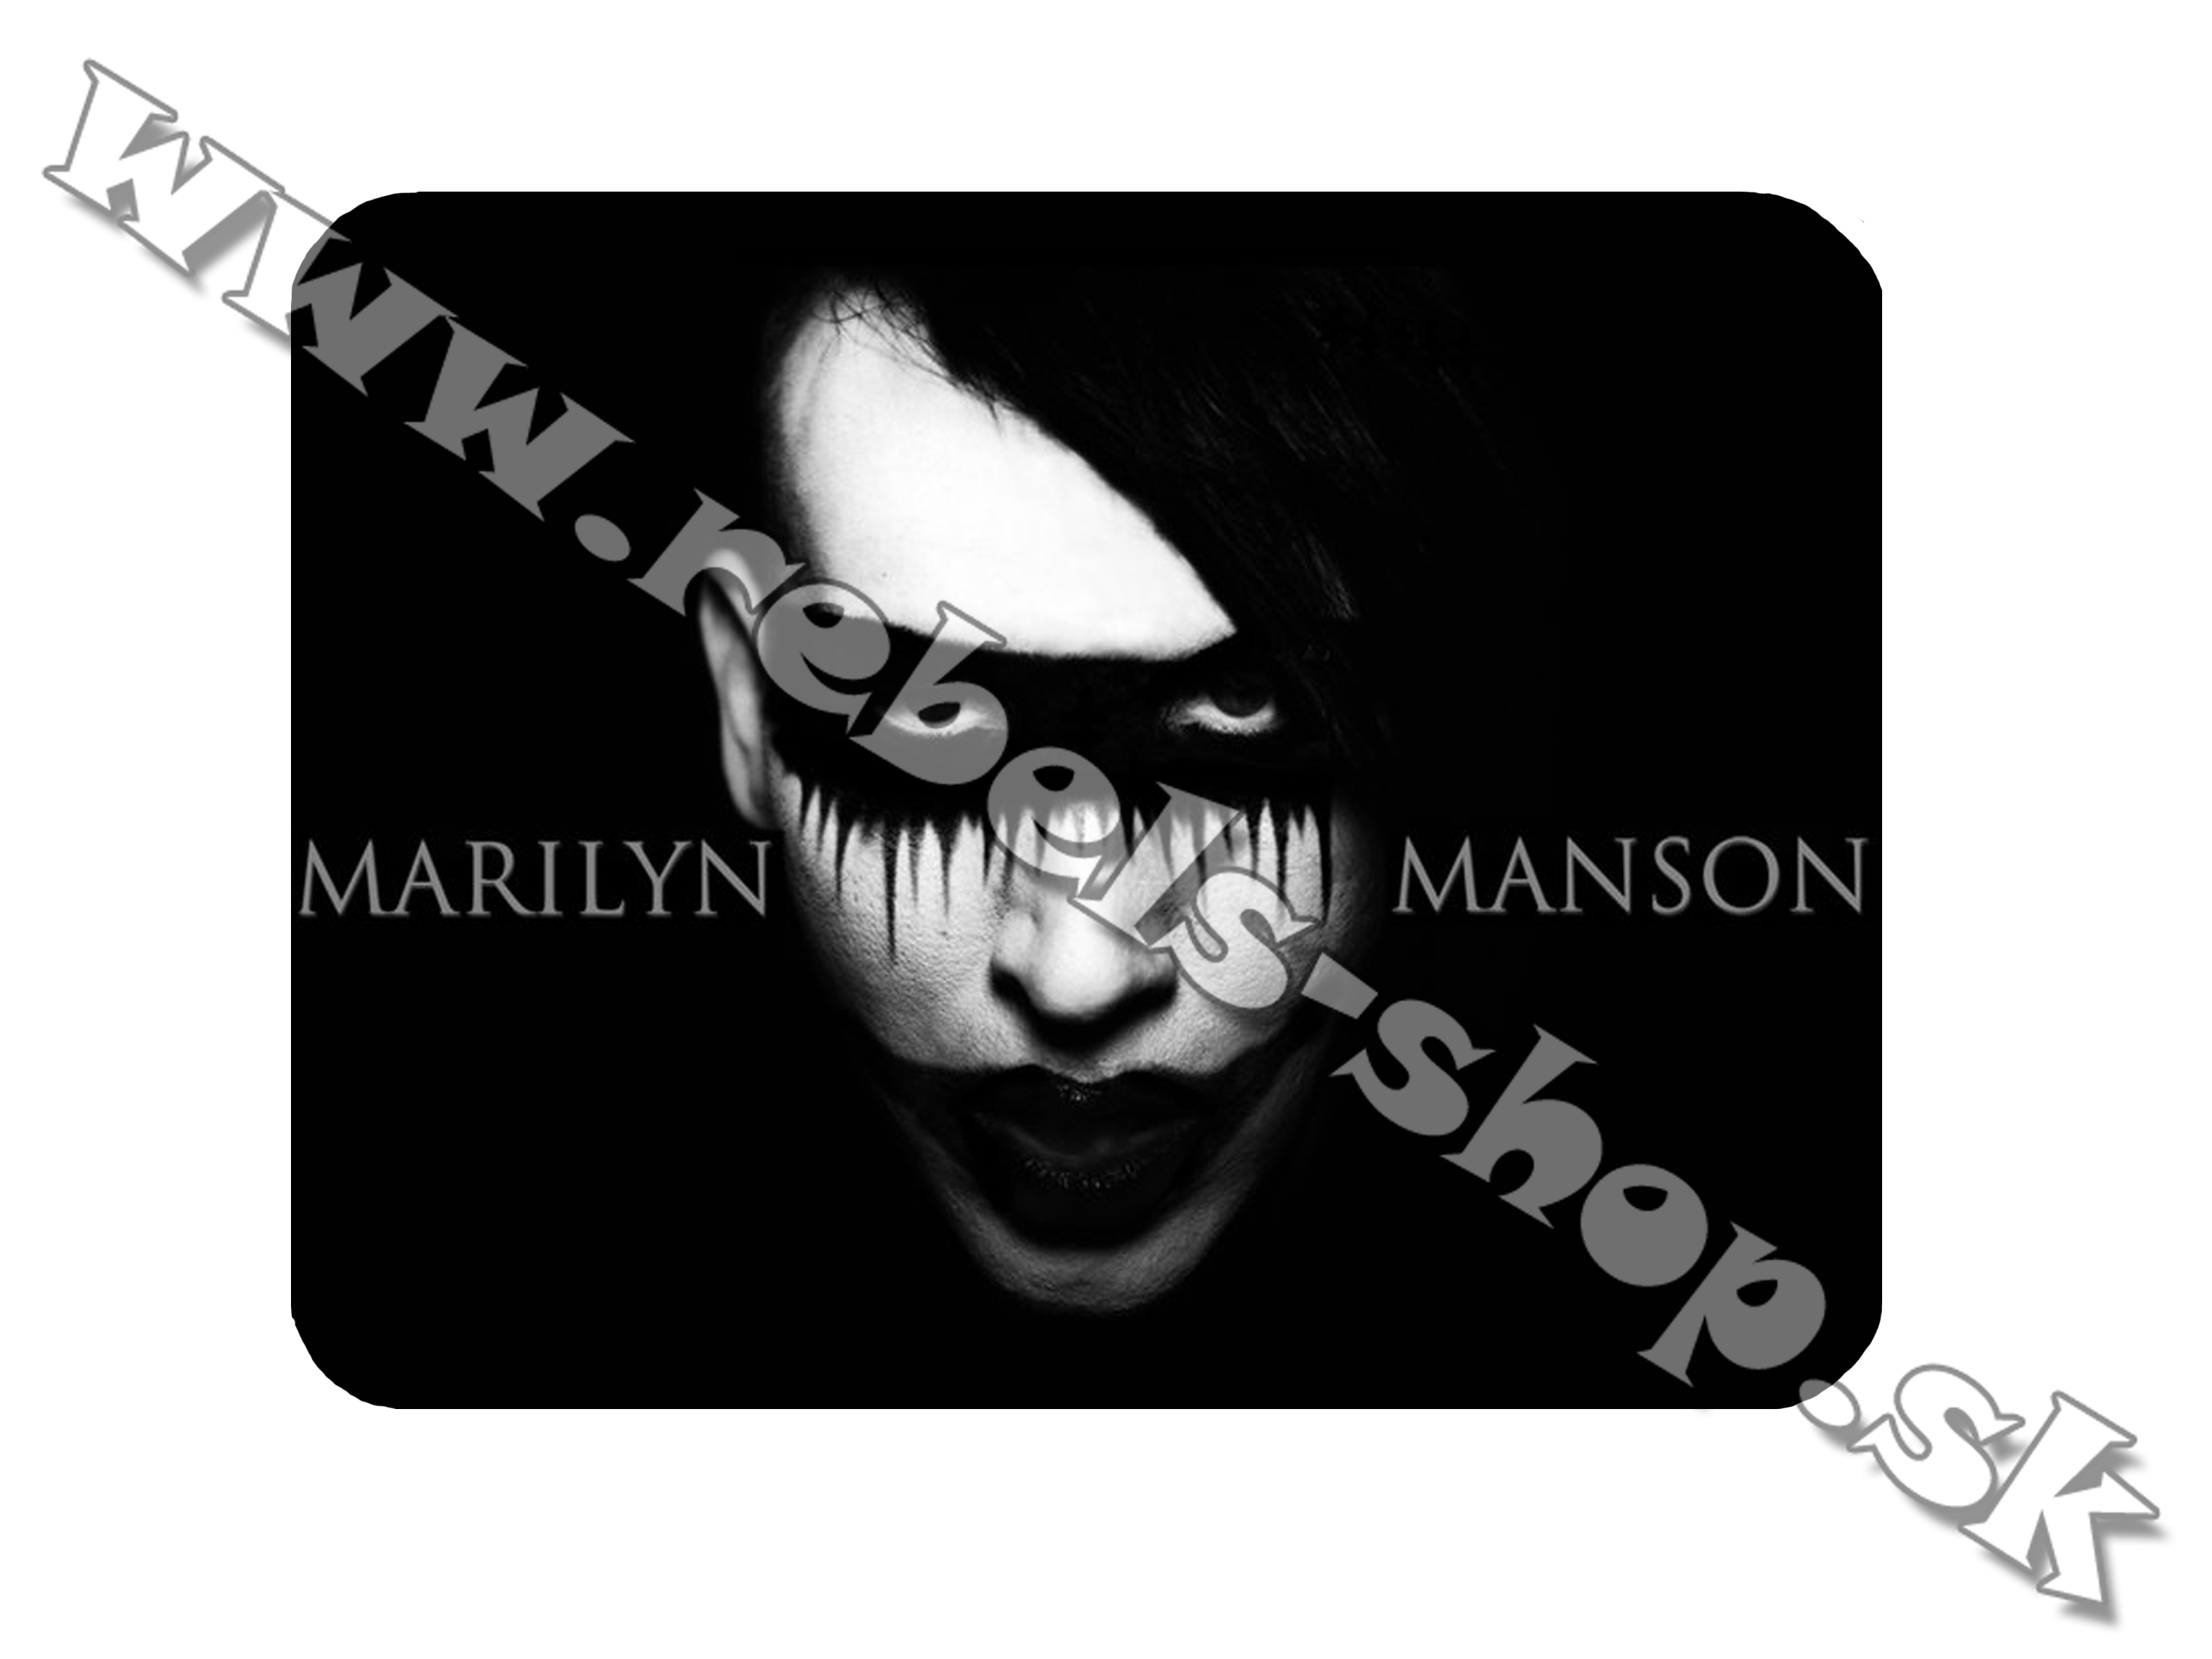 Podložka pod myš  "Marilyn Manson"